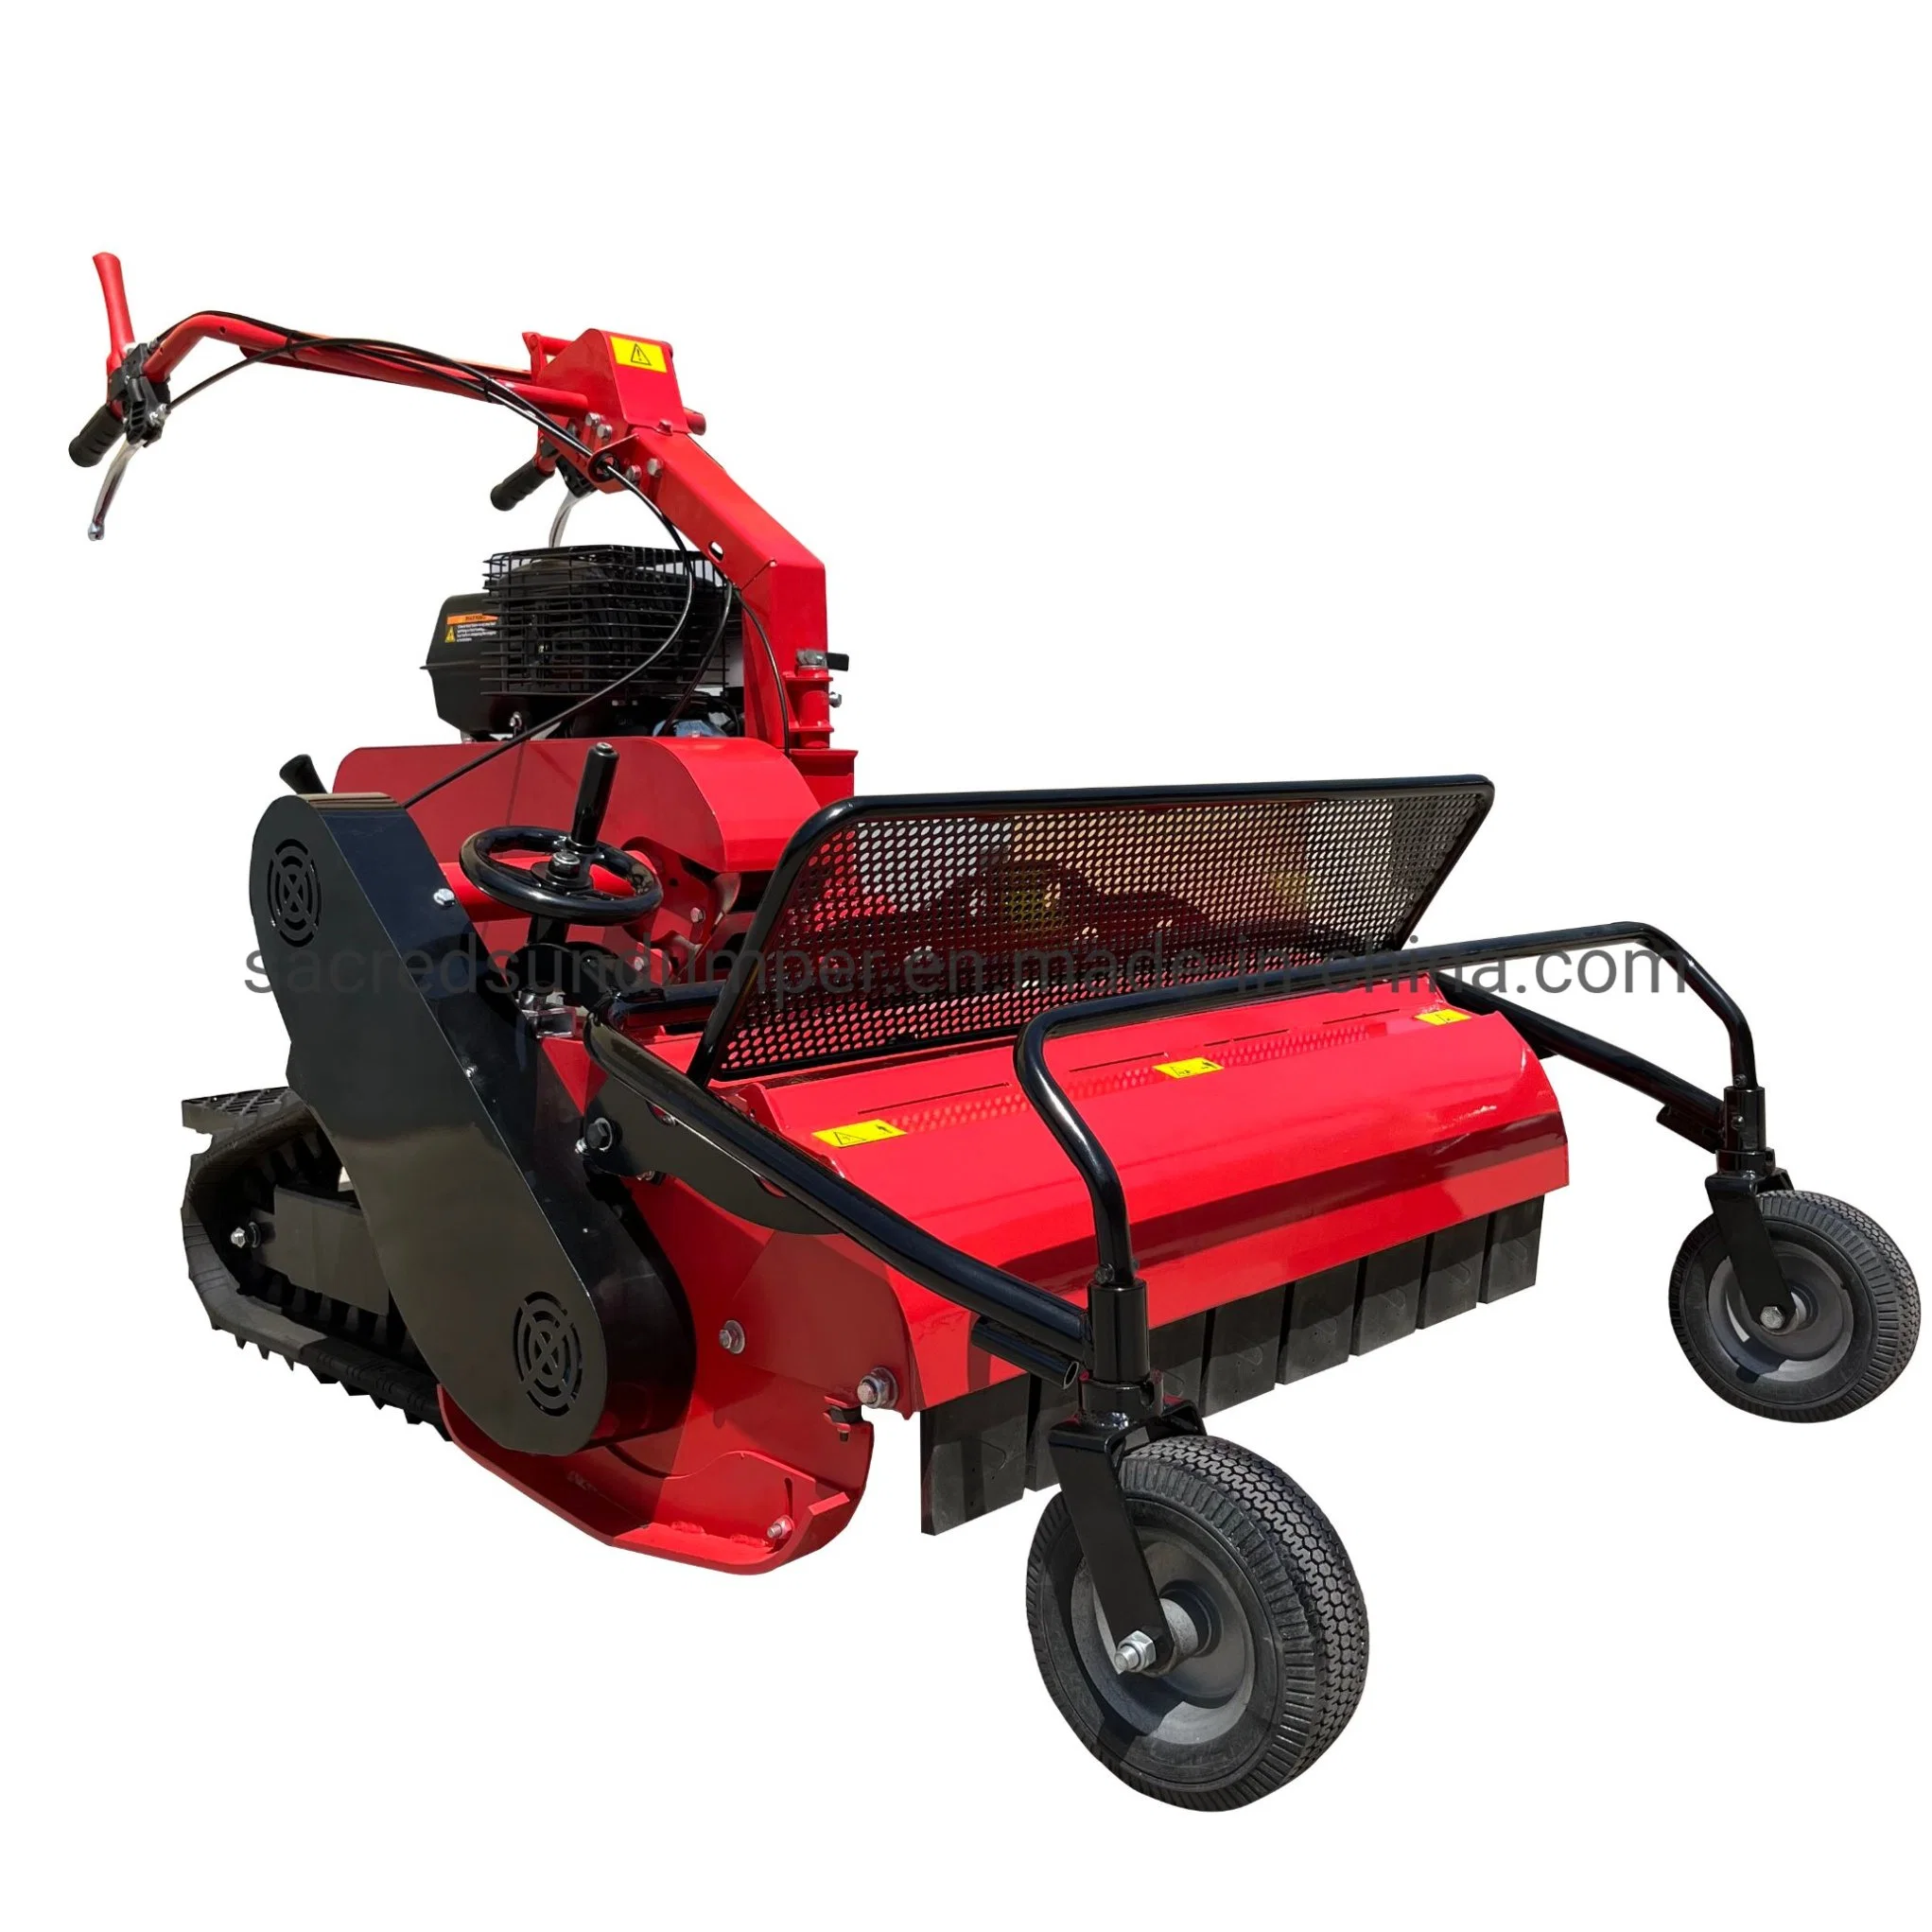 3f+1r Gasoline Petrol Crawler Mower Grass Cutting Lawn Mower Grass Trimmer